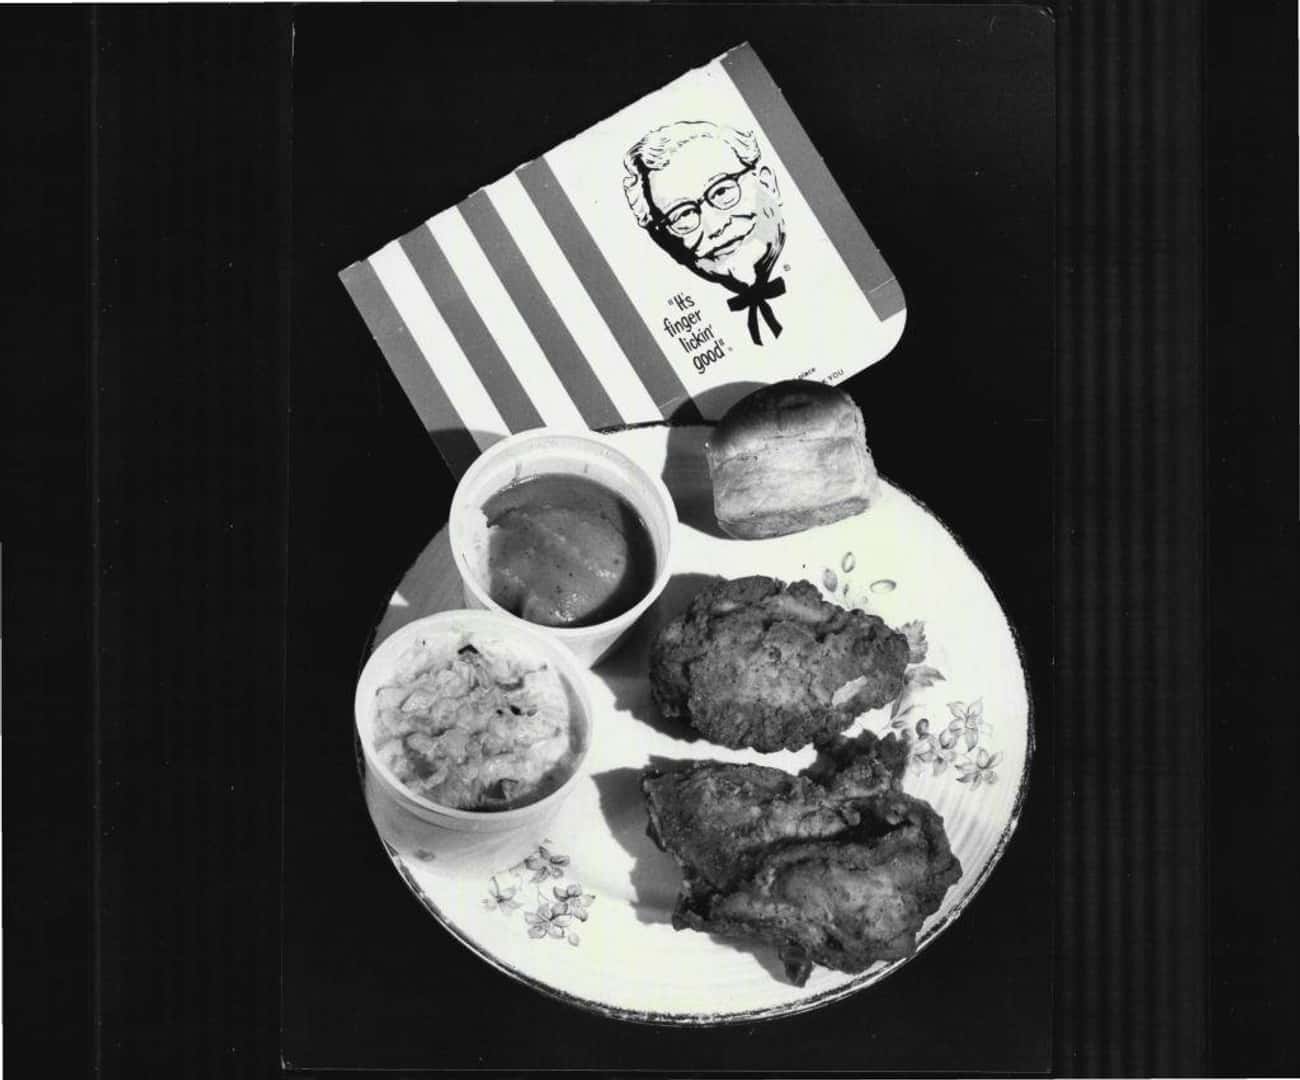 Kentucky Fried Chicken Pack - 1979